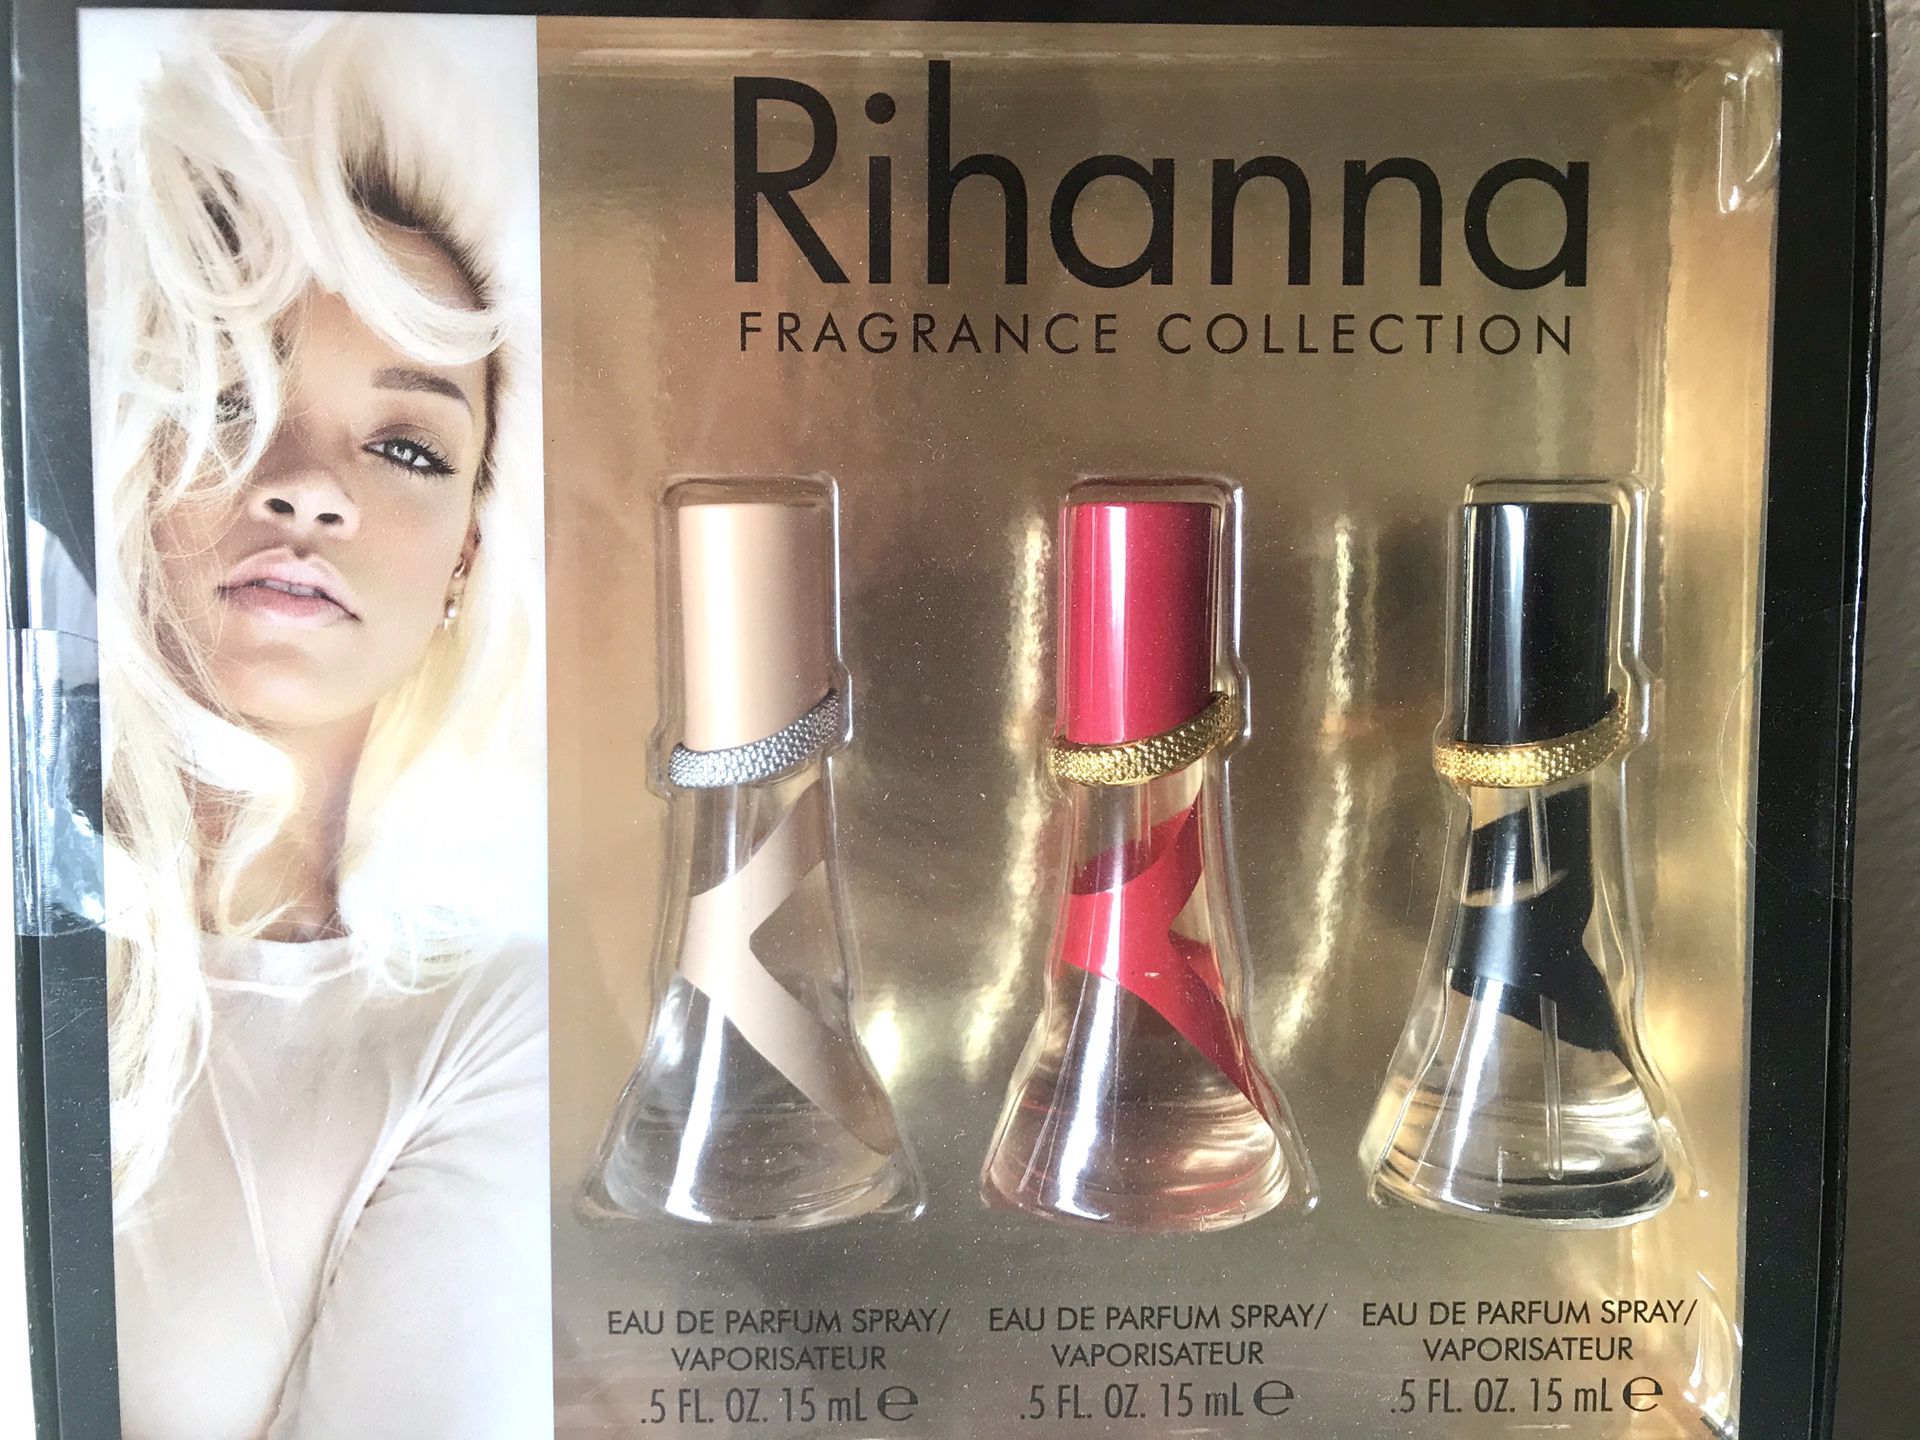 Rihanna fragrance collection